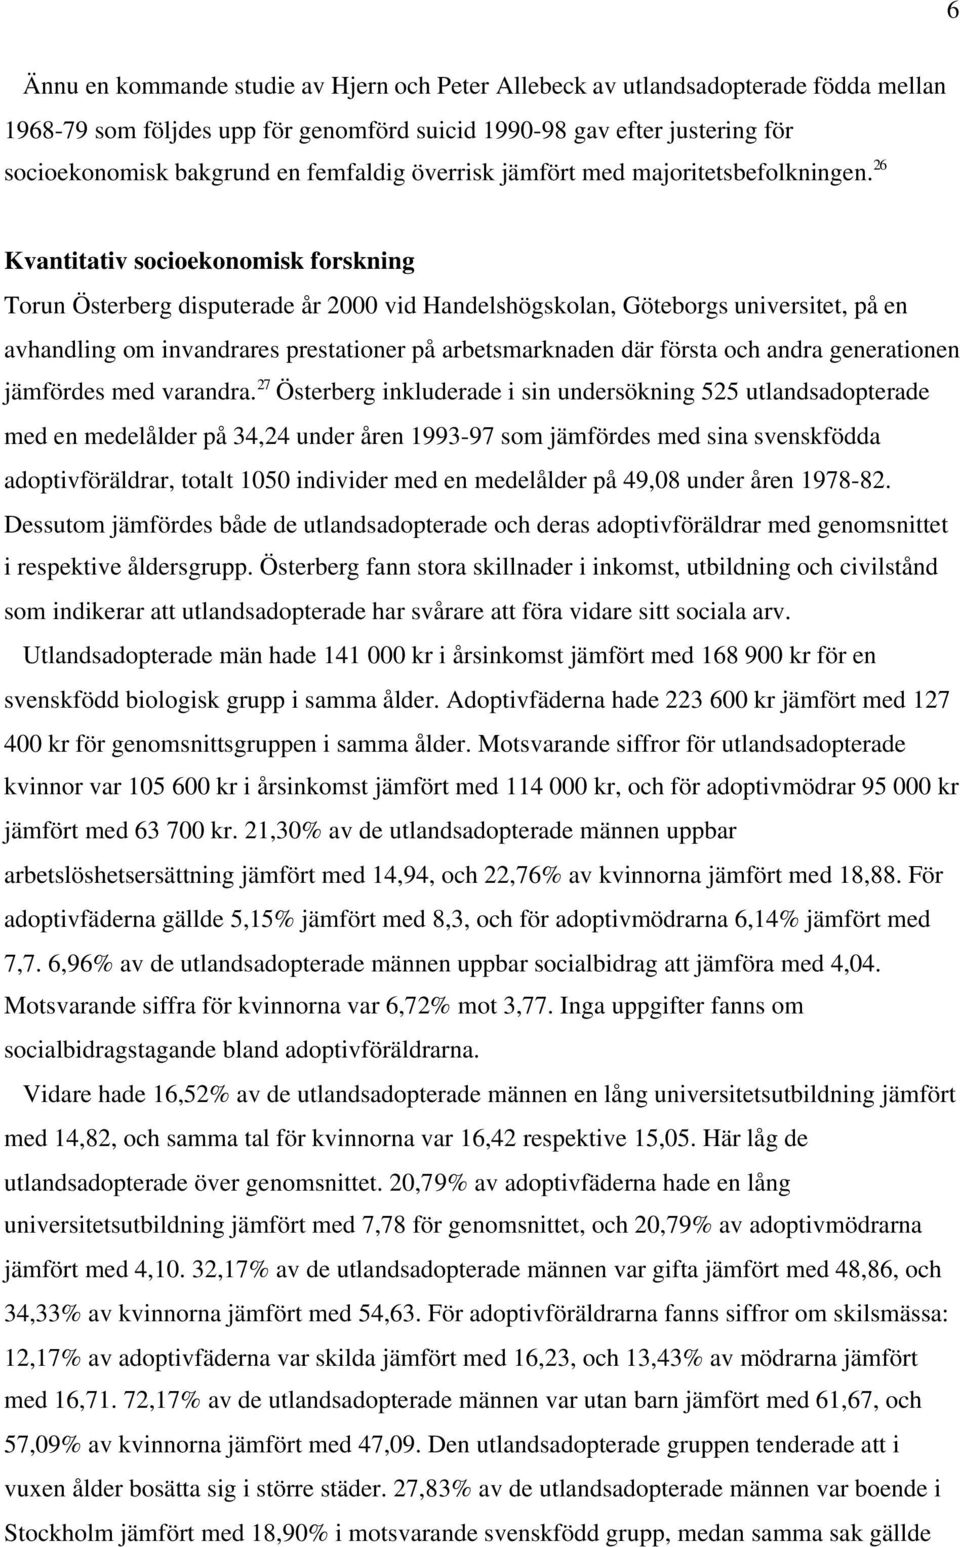 26 Kvantitativ socioekonomisk forskning Torun Österberg disputerade år 2000 vid Handelshögskolan, Göteborgs universitet, på en avhandling om invandrares prestationer på arbetsmarknaden där första och